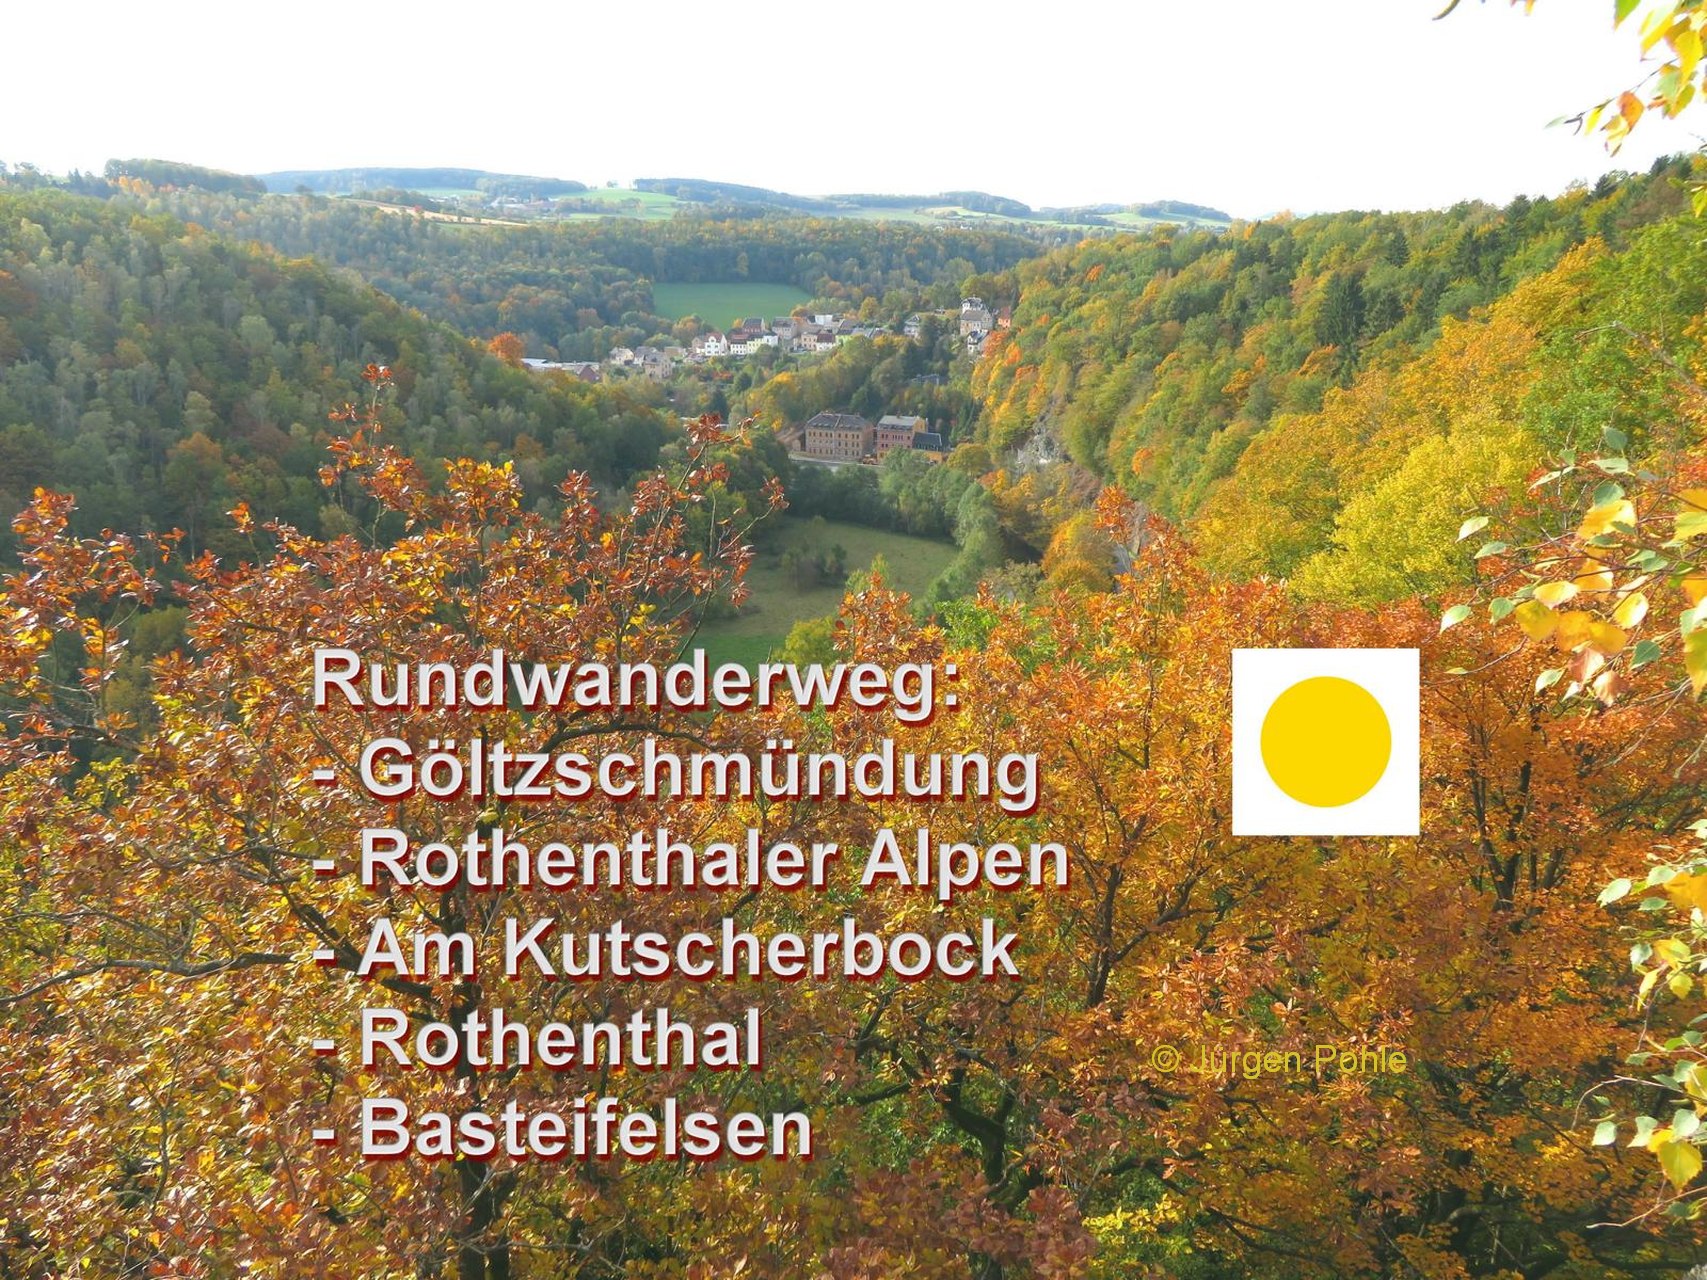 Rundwanderweg – Herbstwanderung durch die Rothenthaler Alpen